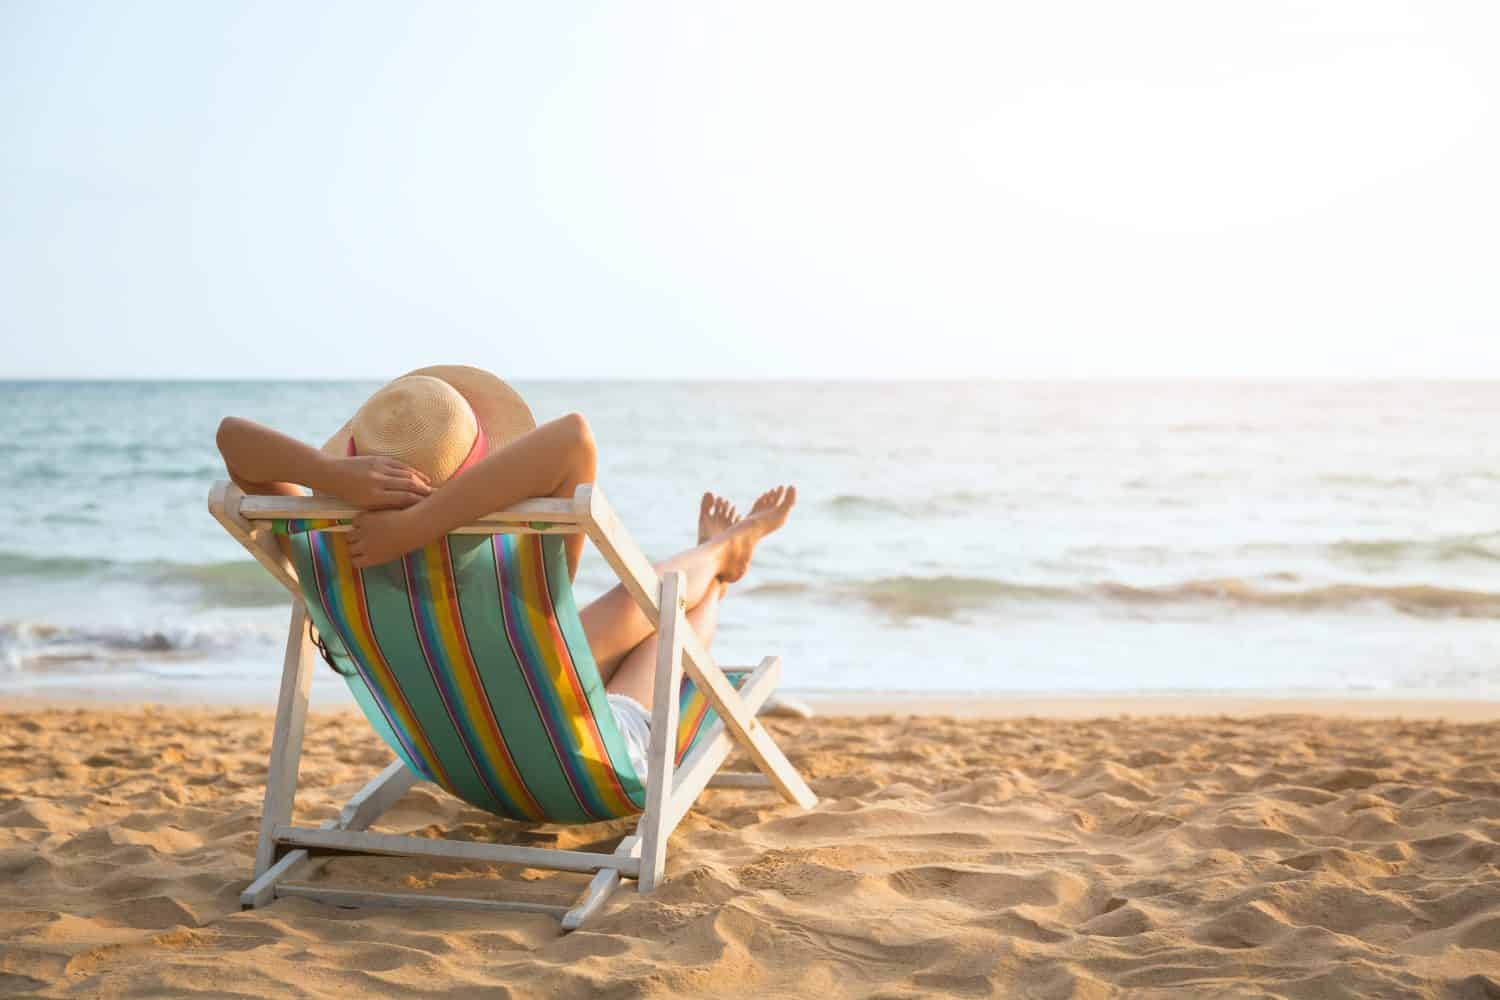 Concetto di vacanza estiva sulla spiaggia, donna asiatica con cappello rilassante e braccio sulla sedia spiaggia a Koh Mak, Trad, Thailandia